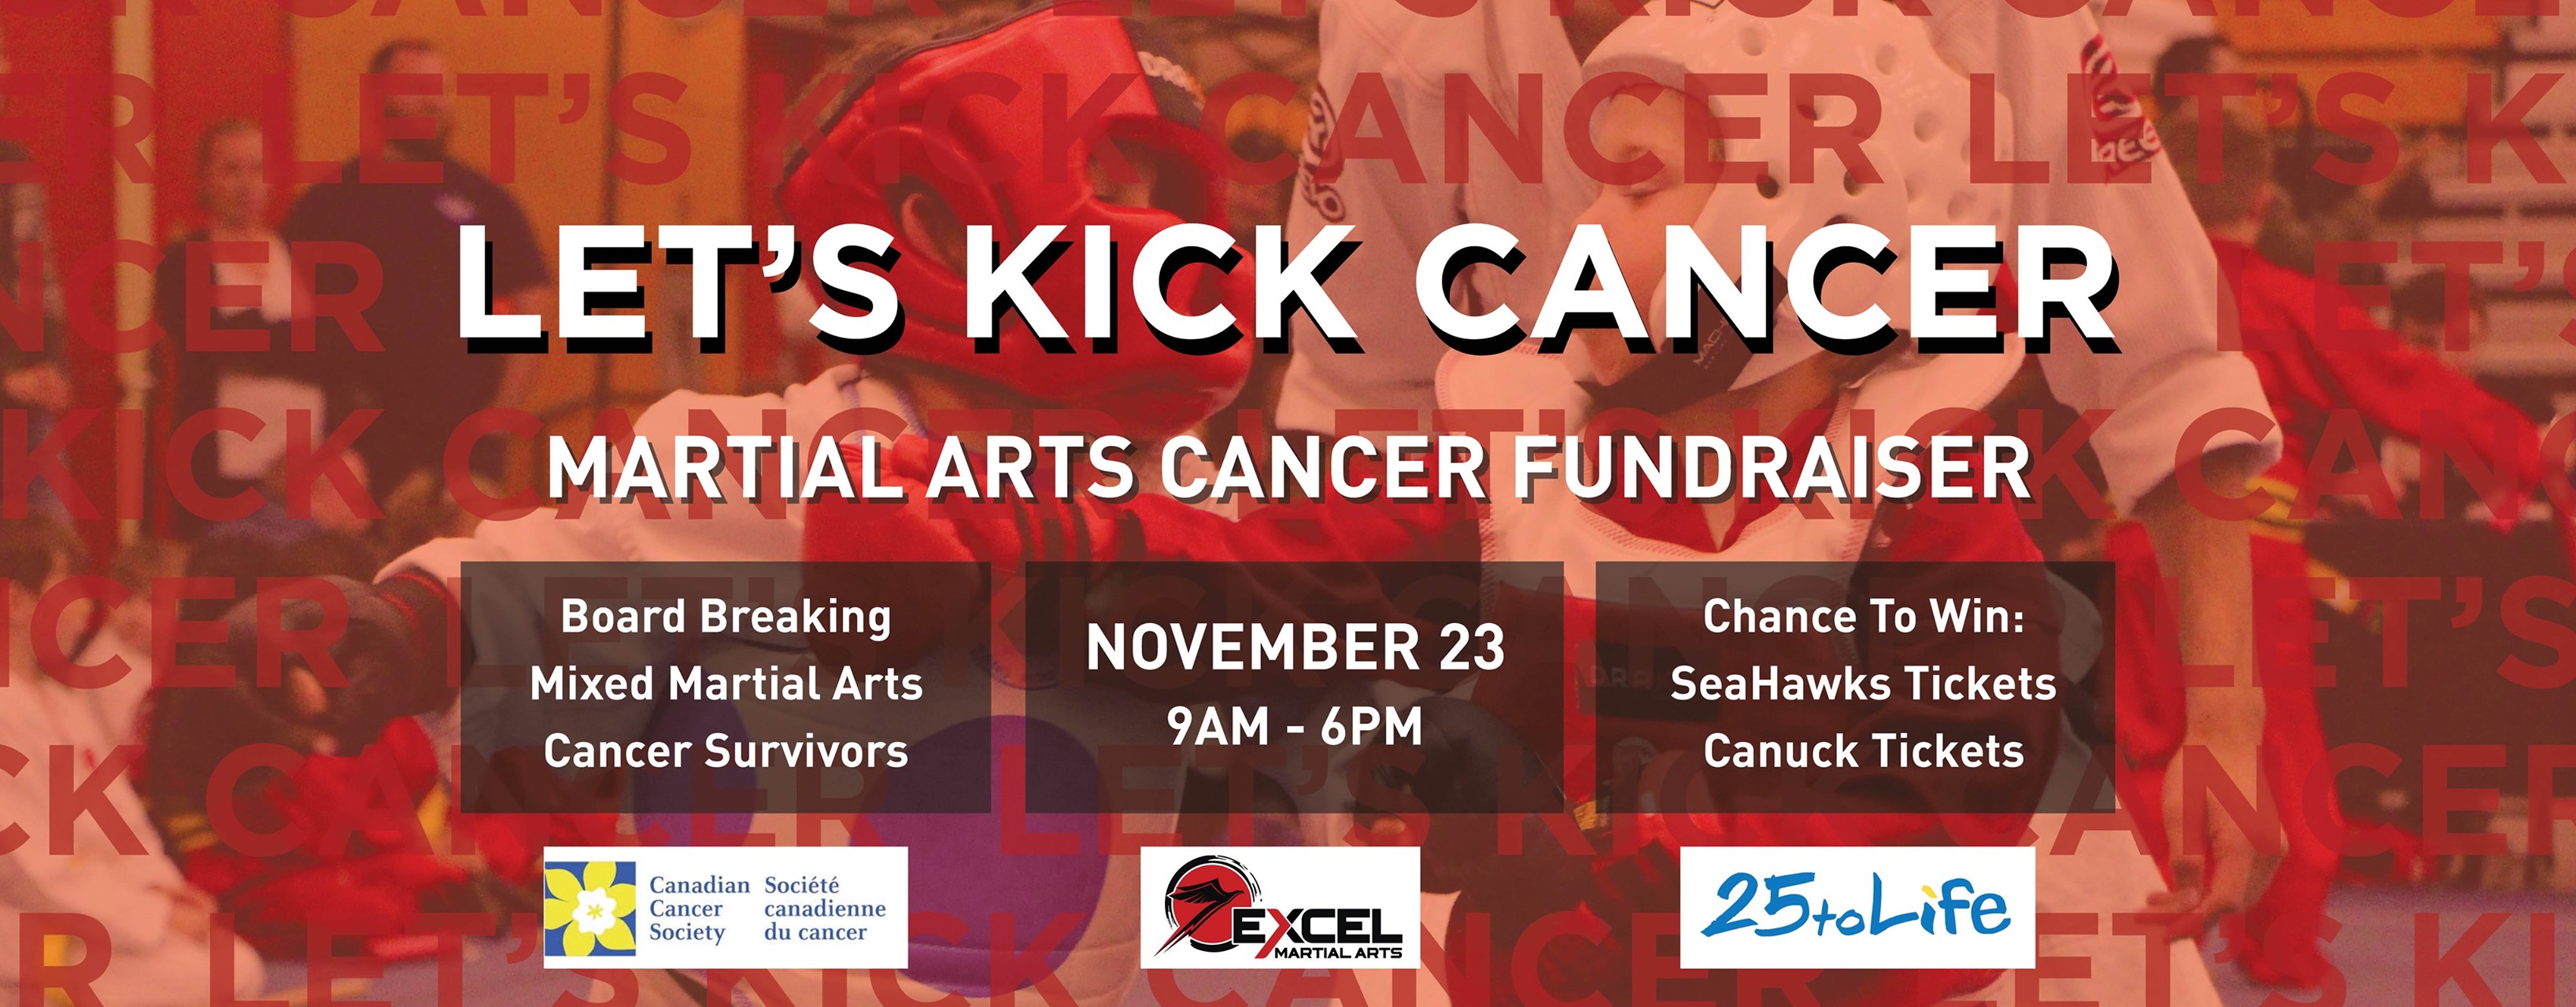 Let's Kick Cancer